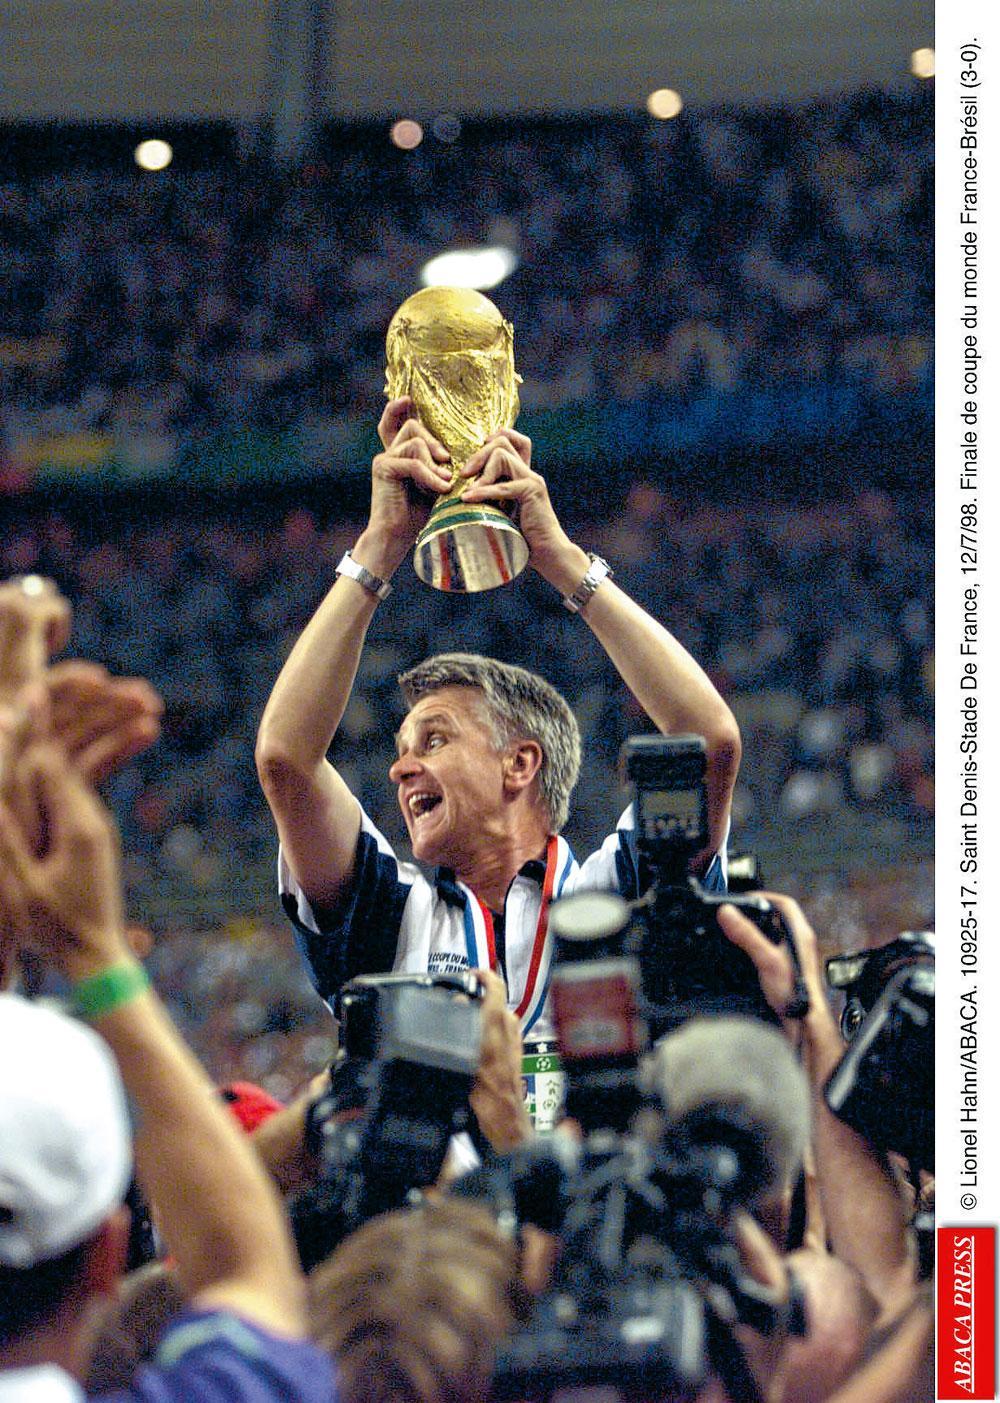 Mon histoire préférée - Ma vie pour une étoile Le livre dans lequel Aimé Jacquet, entraîneur de l'équipe de France qui a remporté la Coupe du monde de football 1998, raconte comment s'est bâti ce succès historique. 